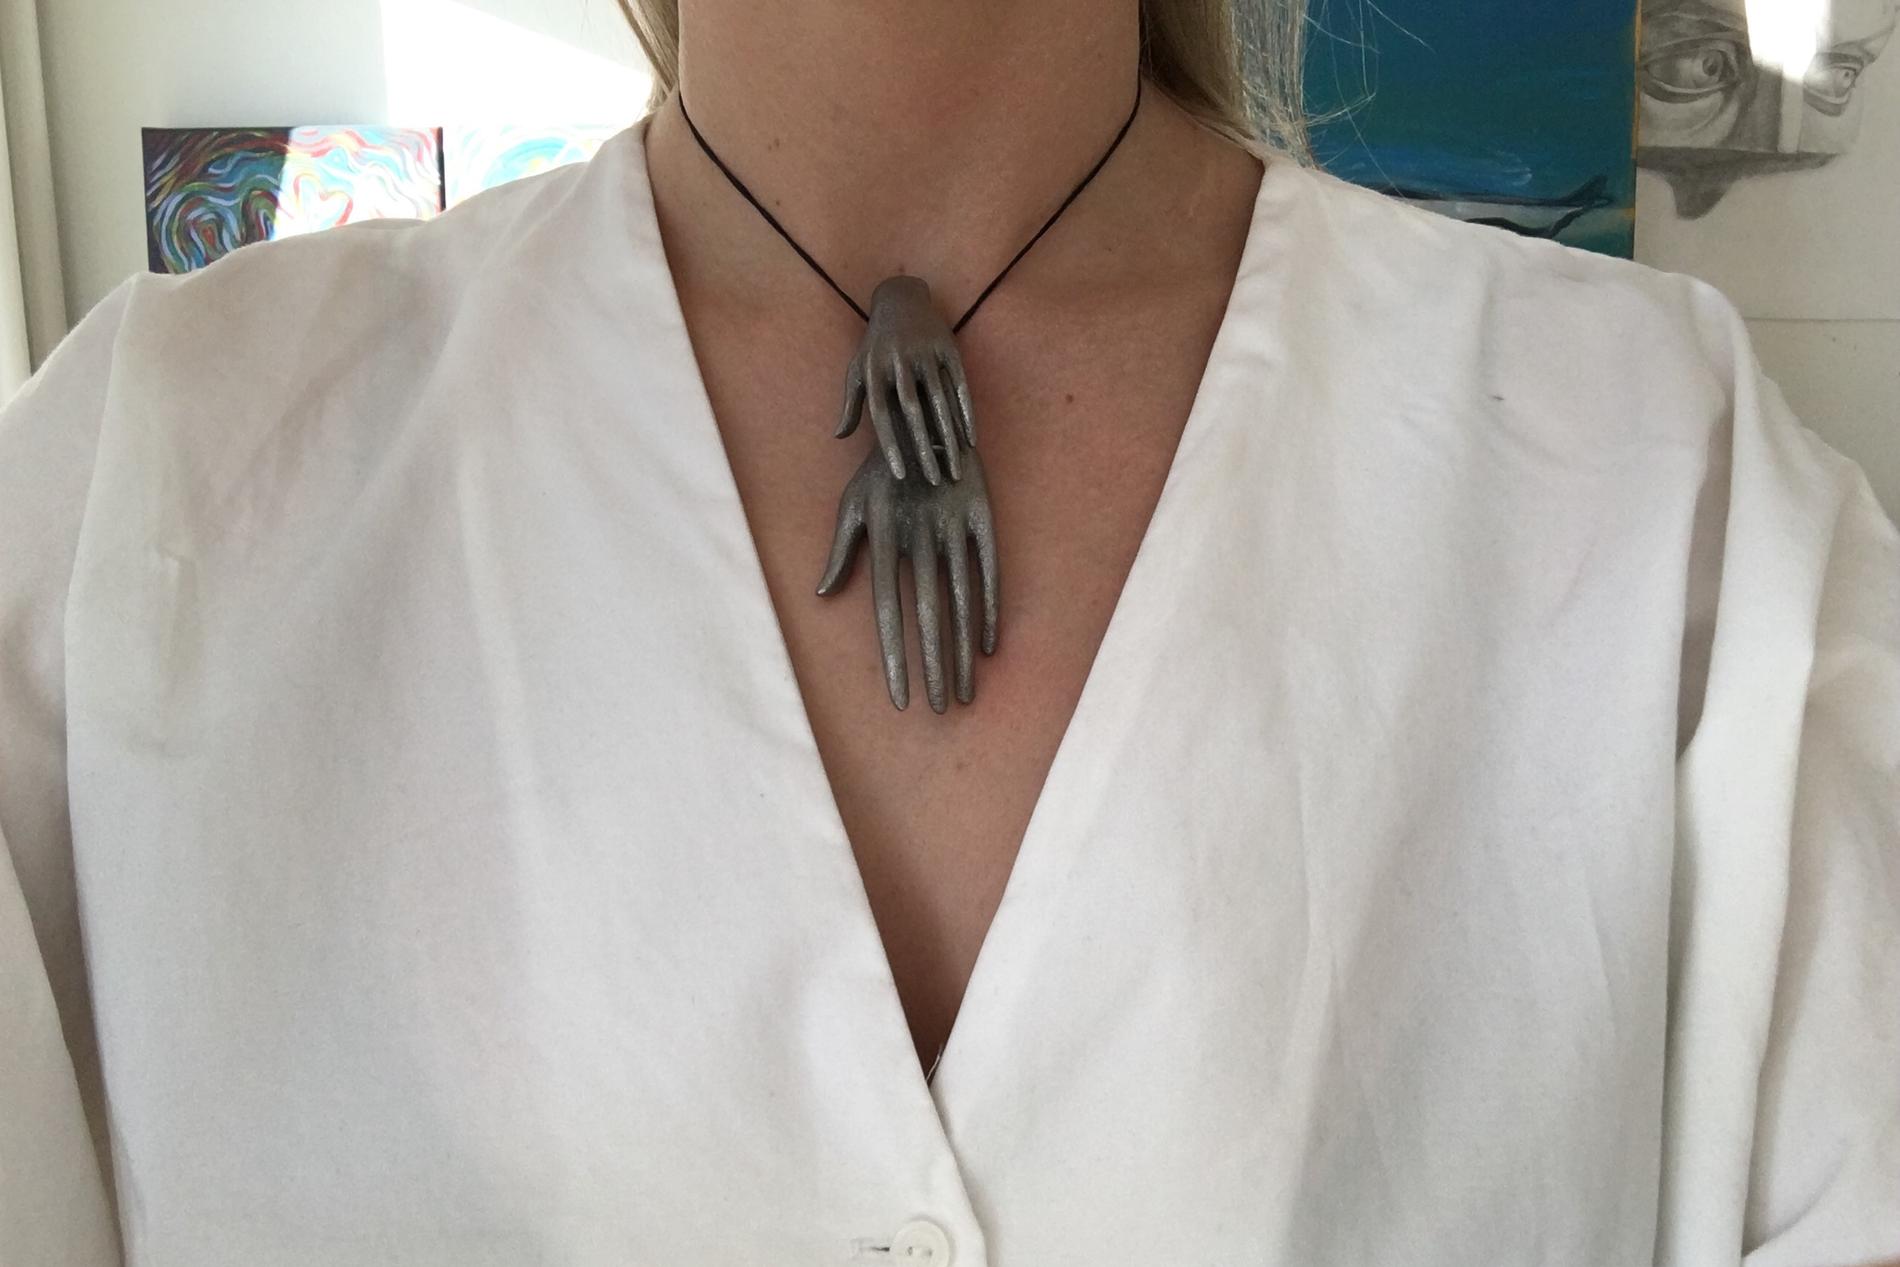 Det 3D-printade halsbandet som föreställer två händer.